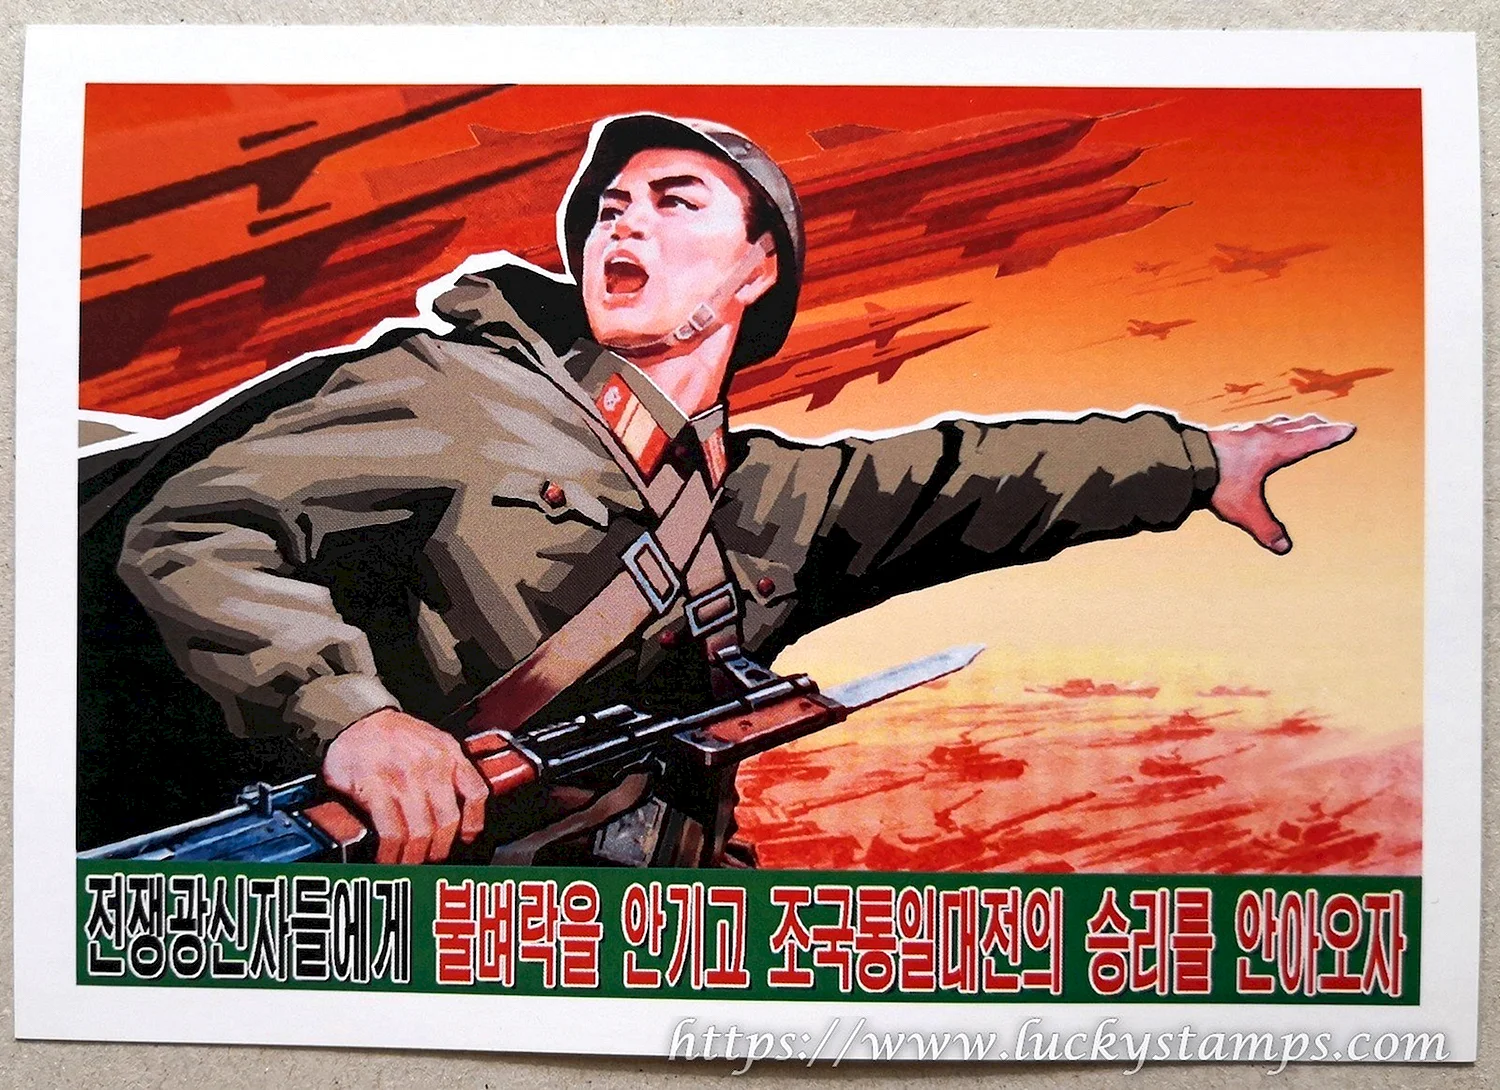 Агитационные плакаты Северной Кореи